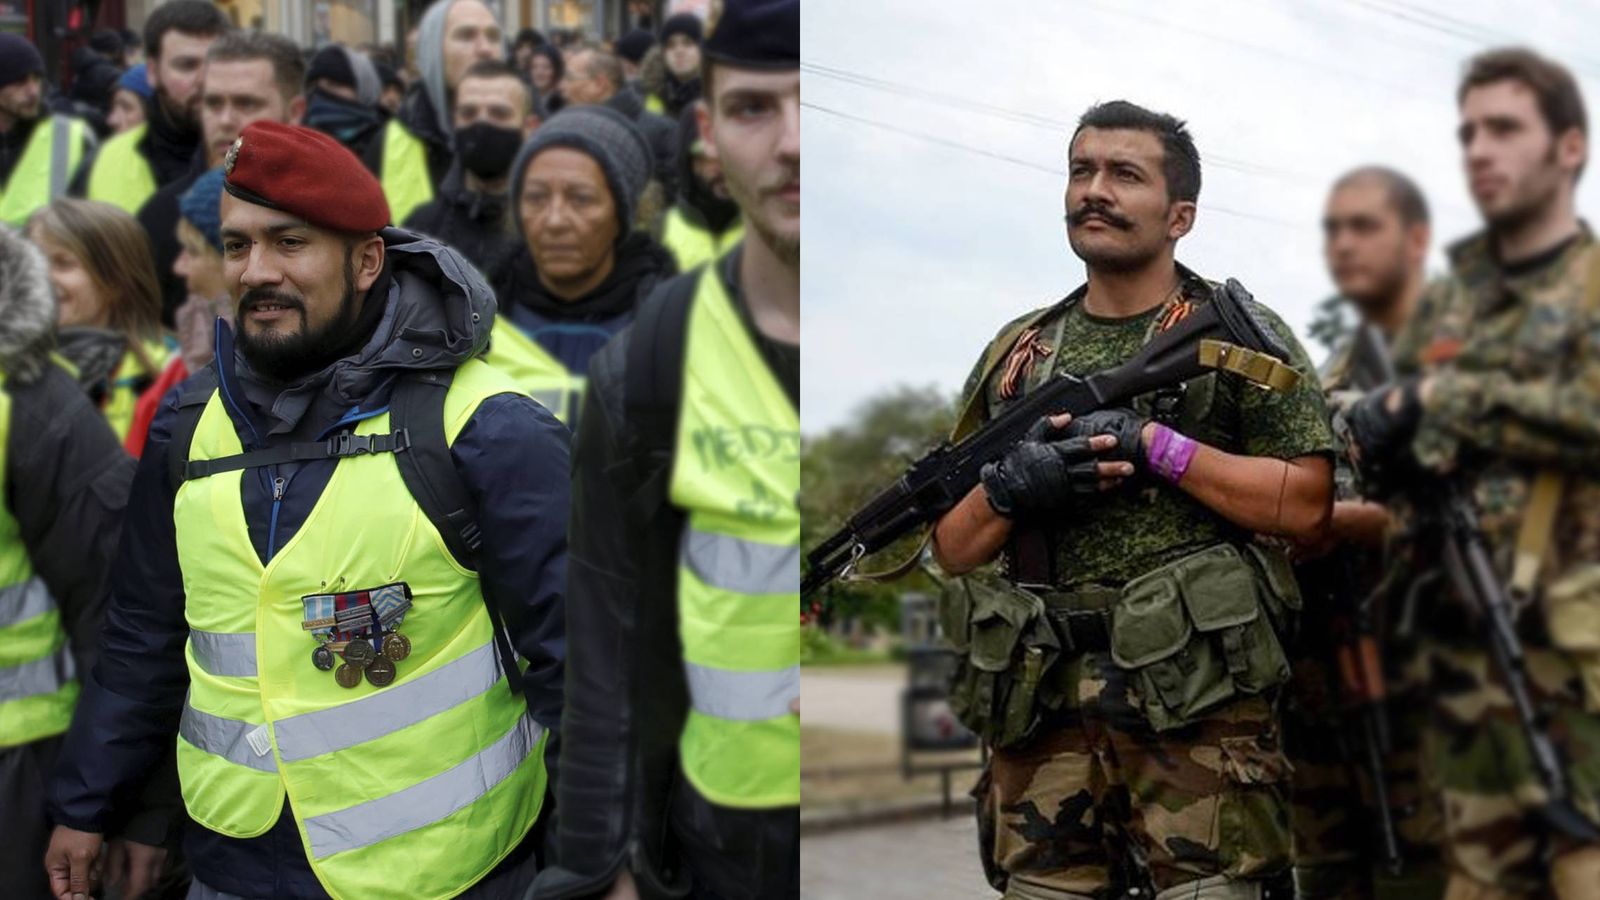 Foto: Víctor Lenta, en el servicio de orden de los chalecos amarillos y entre los rebeldes del Donbás. (Montaje: P. Seijas/Reuters/VK)